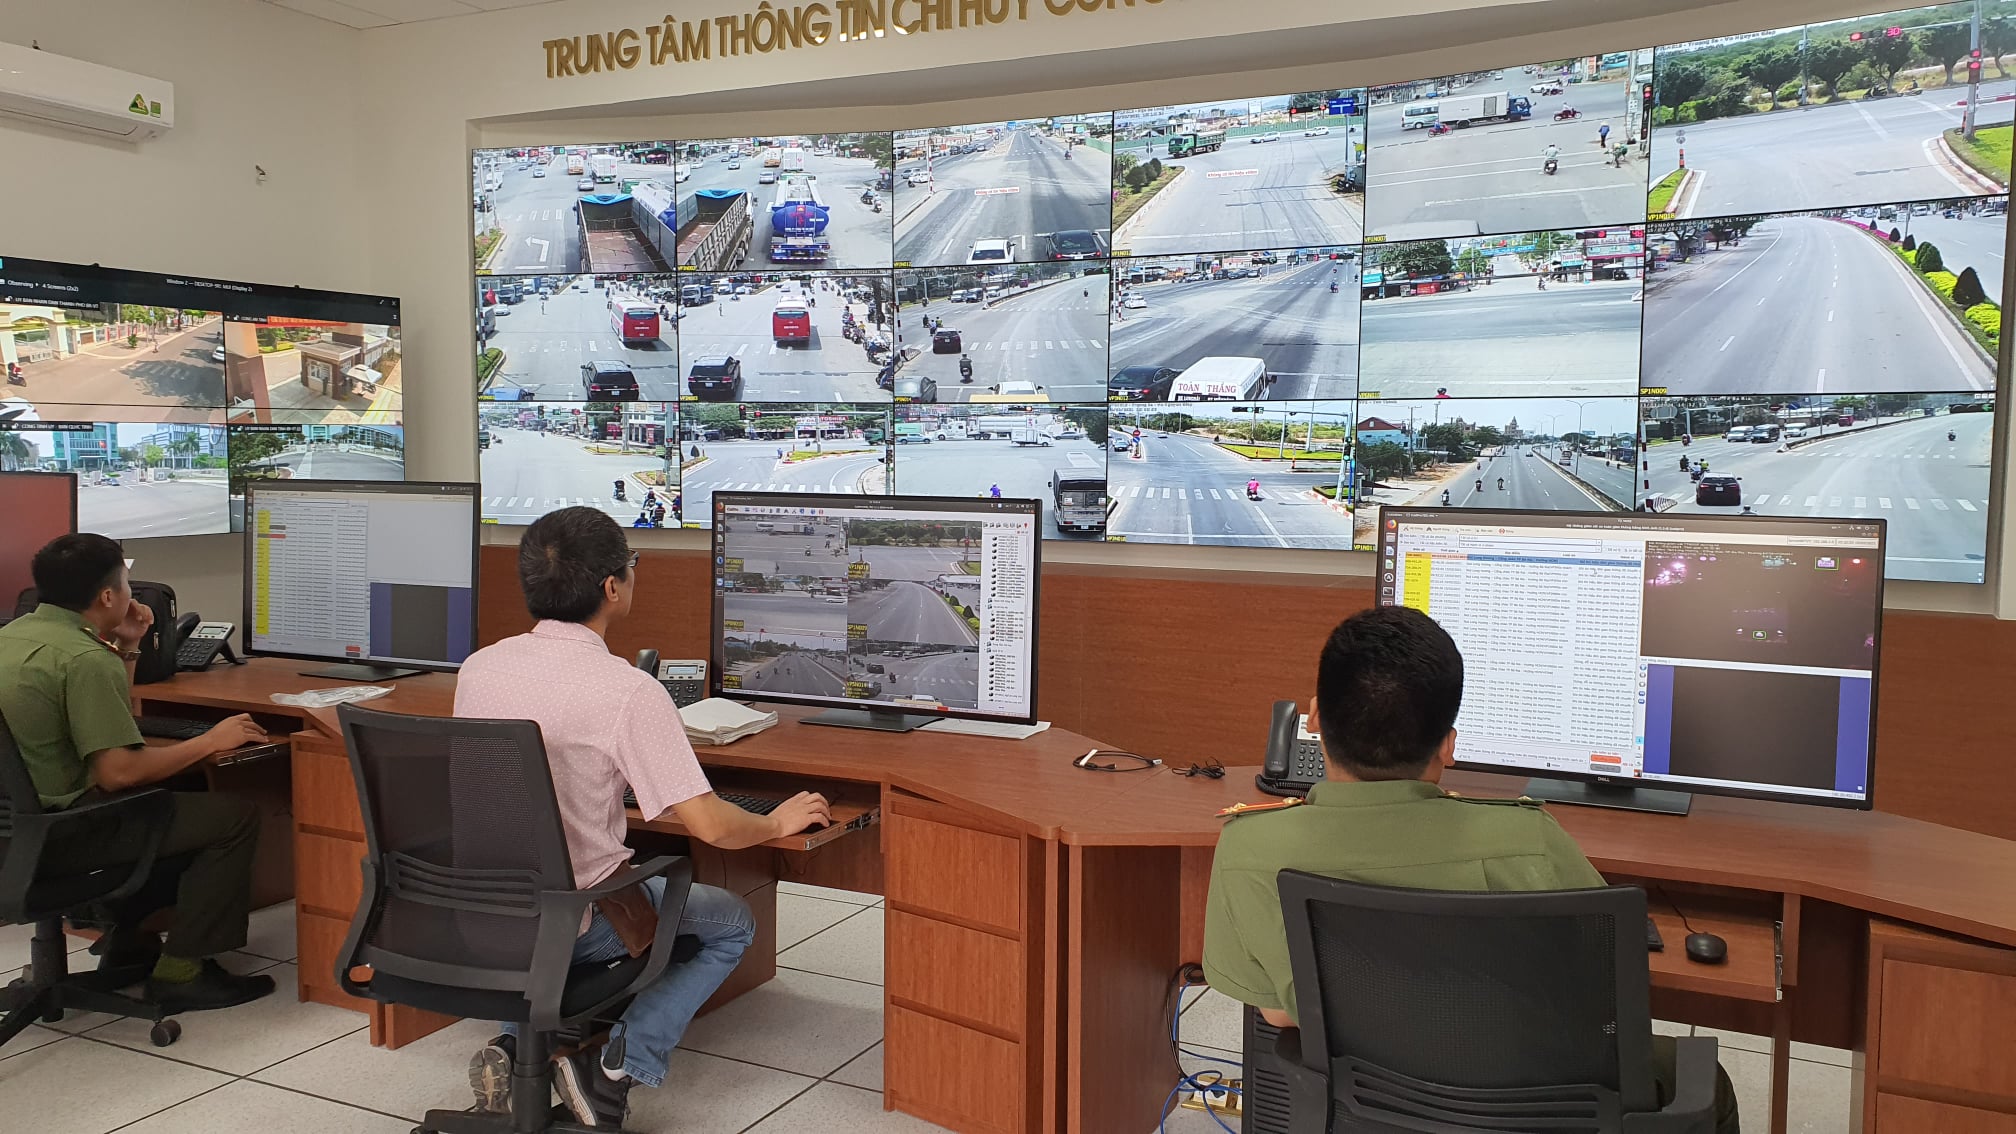 Từ ngày 6/4, Công an tỉnh sẽ khai trương, đưa vào vận hành hệ thống giao thông thông minh, giám sát tự động bằng camera trên Quốc lộ 51. Ảnh chụp tại Trung tâm thông tin chỉ huy, Công an tỉnh.